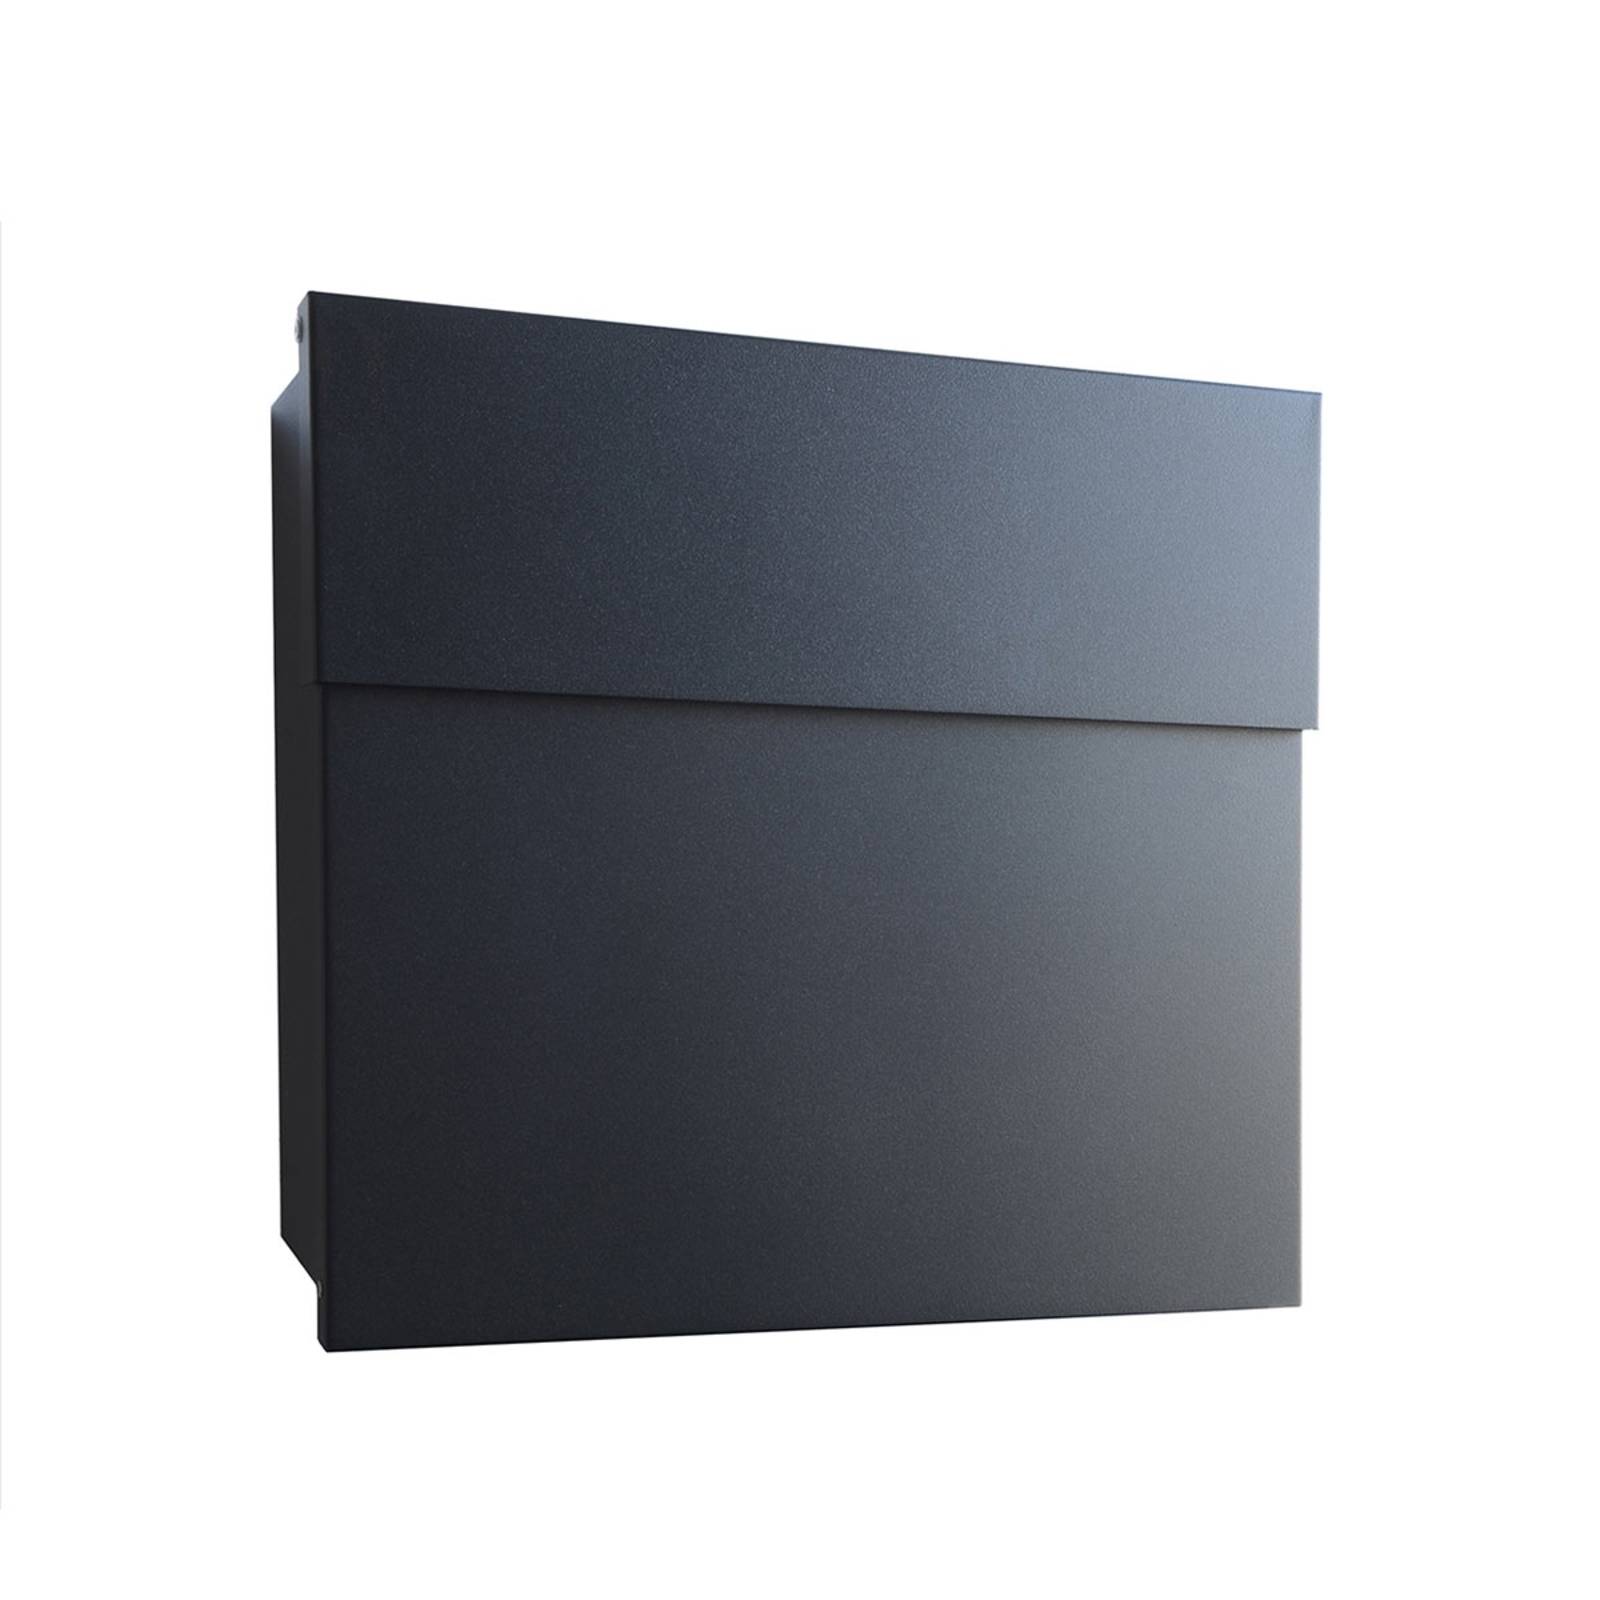 Absolut/ Radius Design-Briefkasten Letterman IV, schwarz